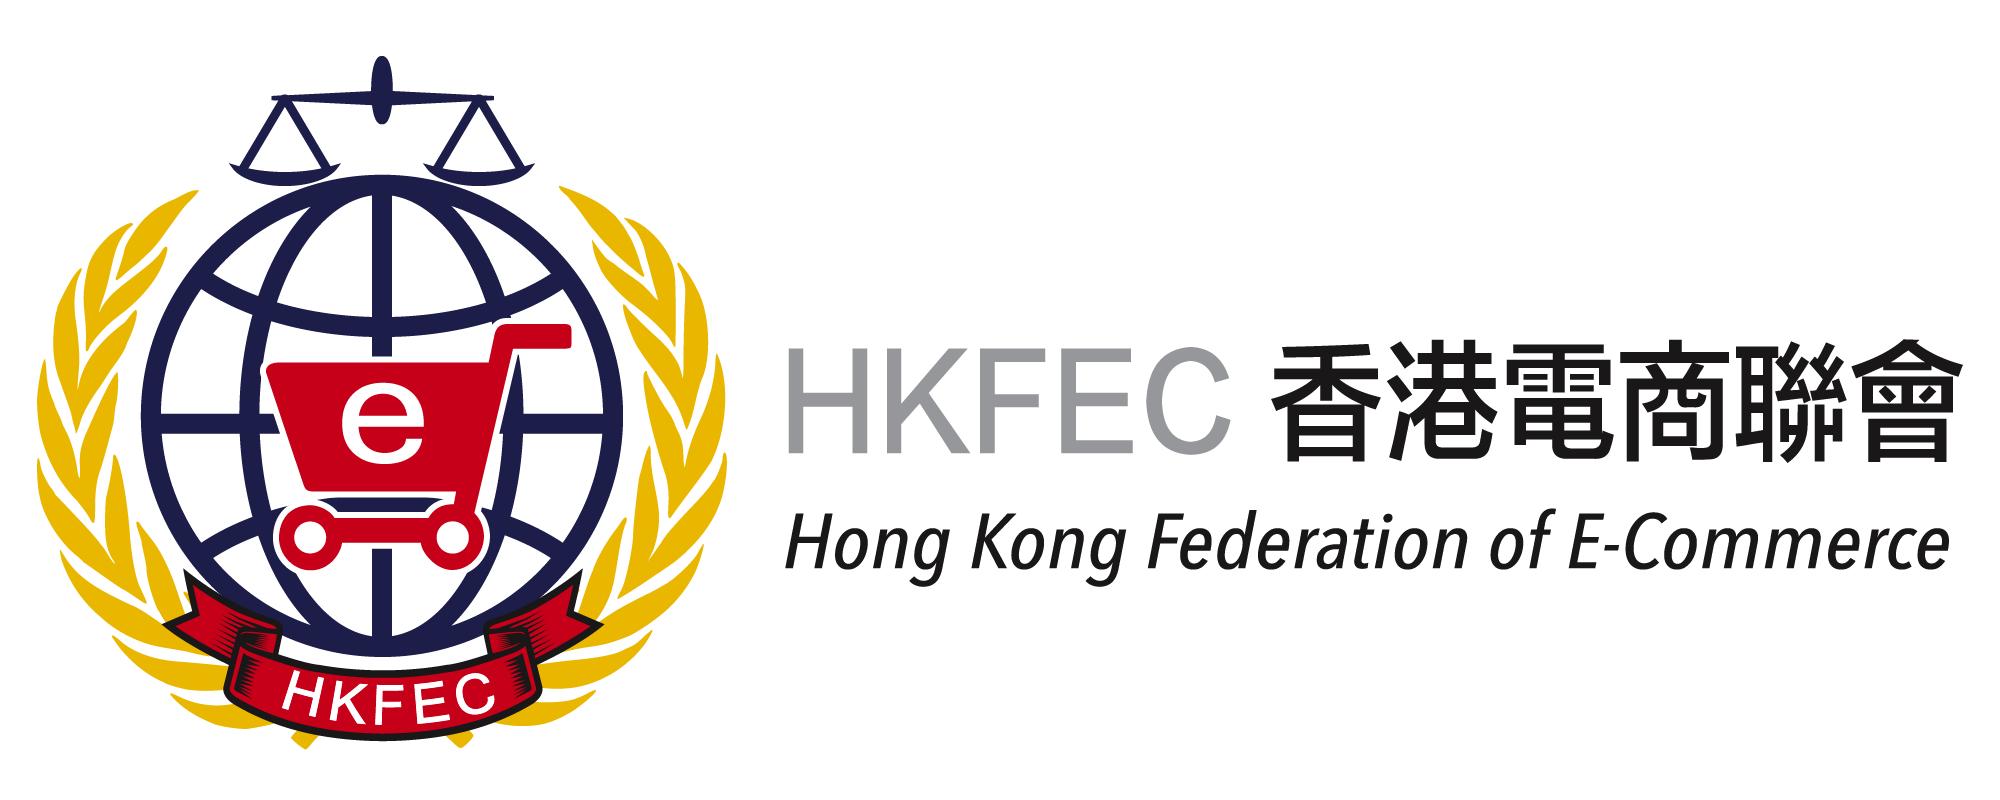 HKFEC